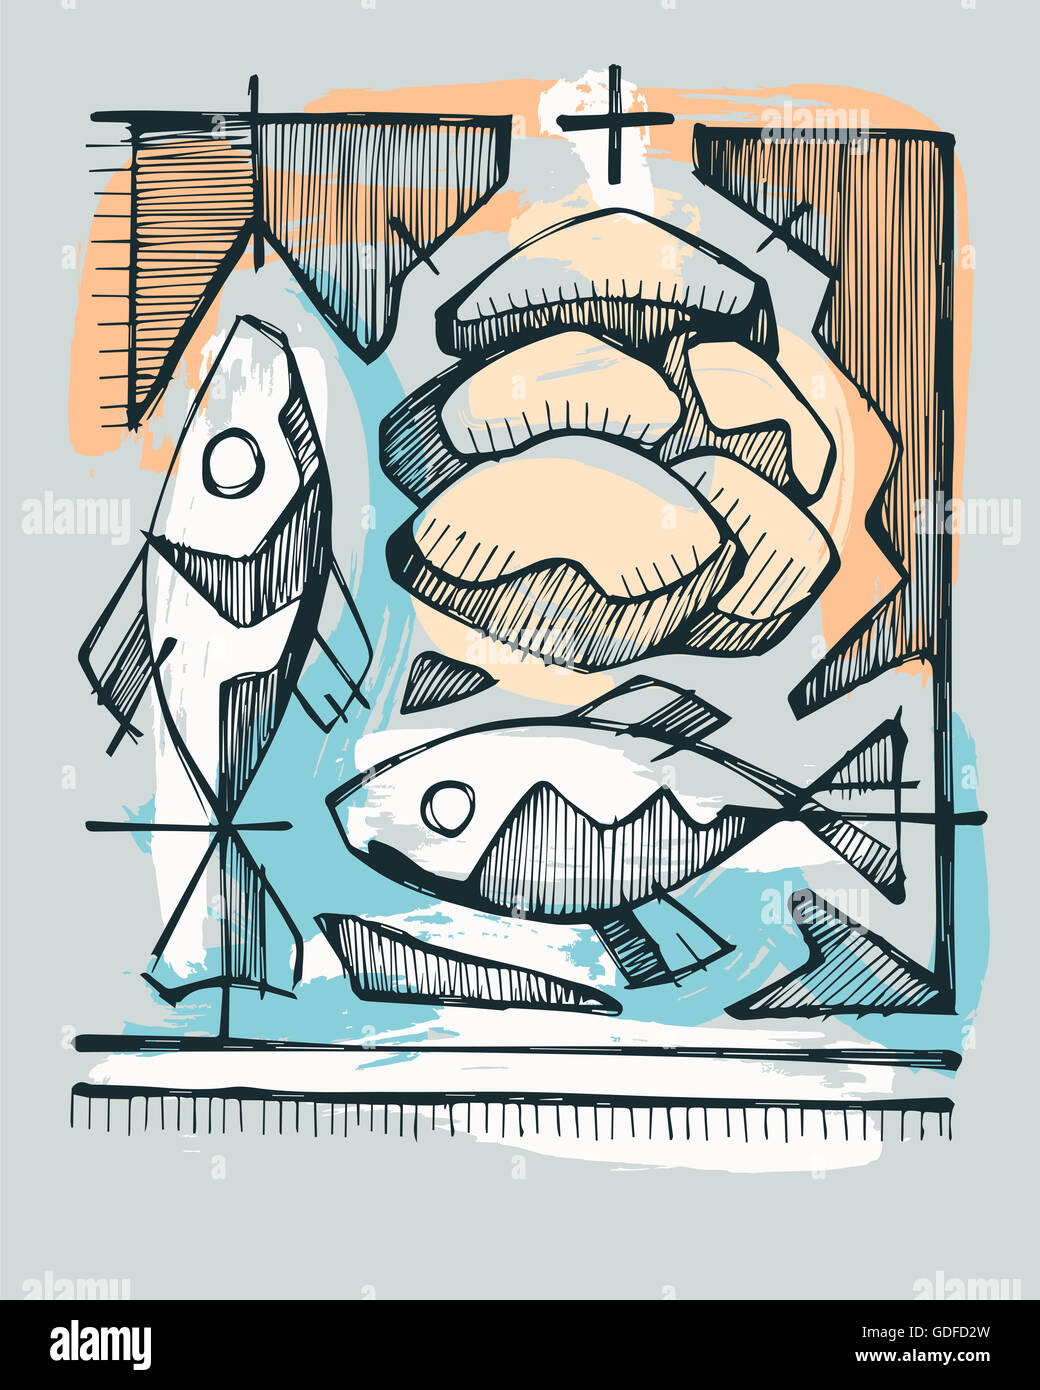 Disegnata a mano immagine o disegno di 2 pesci e 5 tipi di pane, Cattolica che rappresentano il Sacramento dell Eucaristia Foto Stock